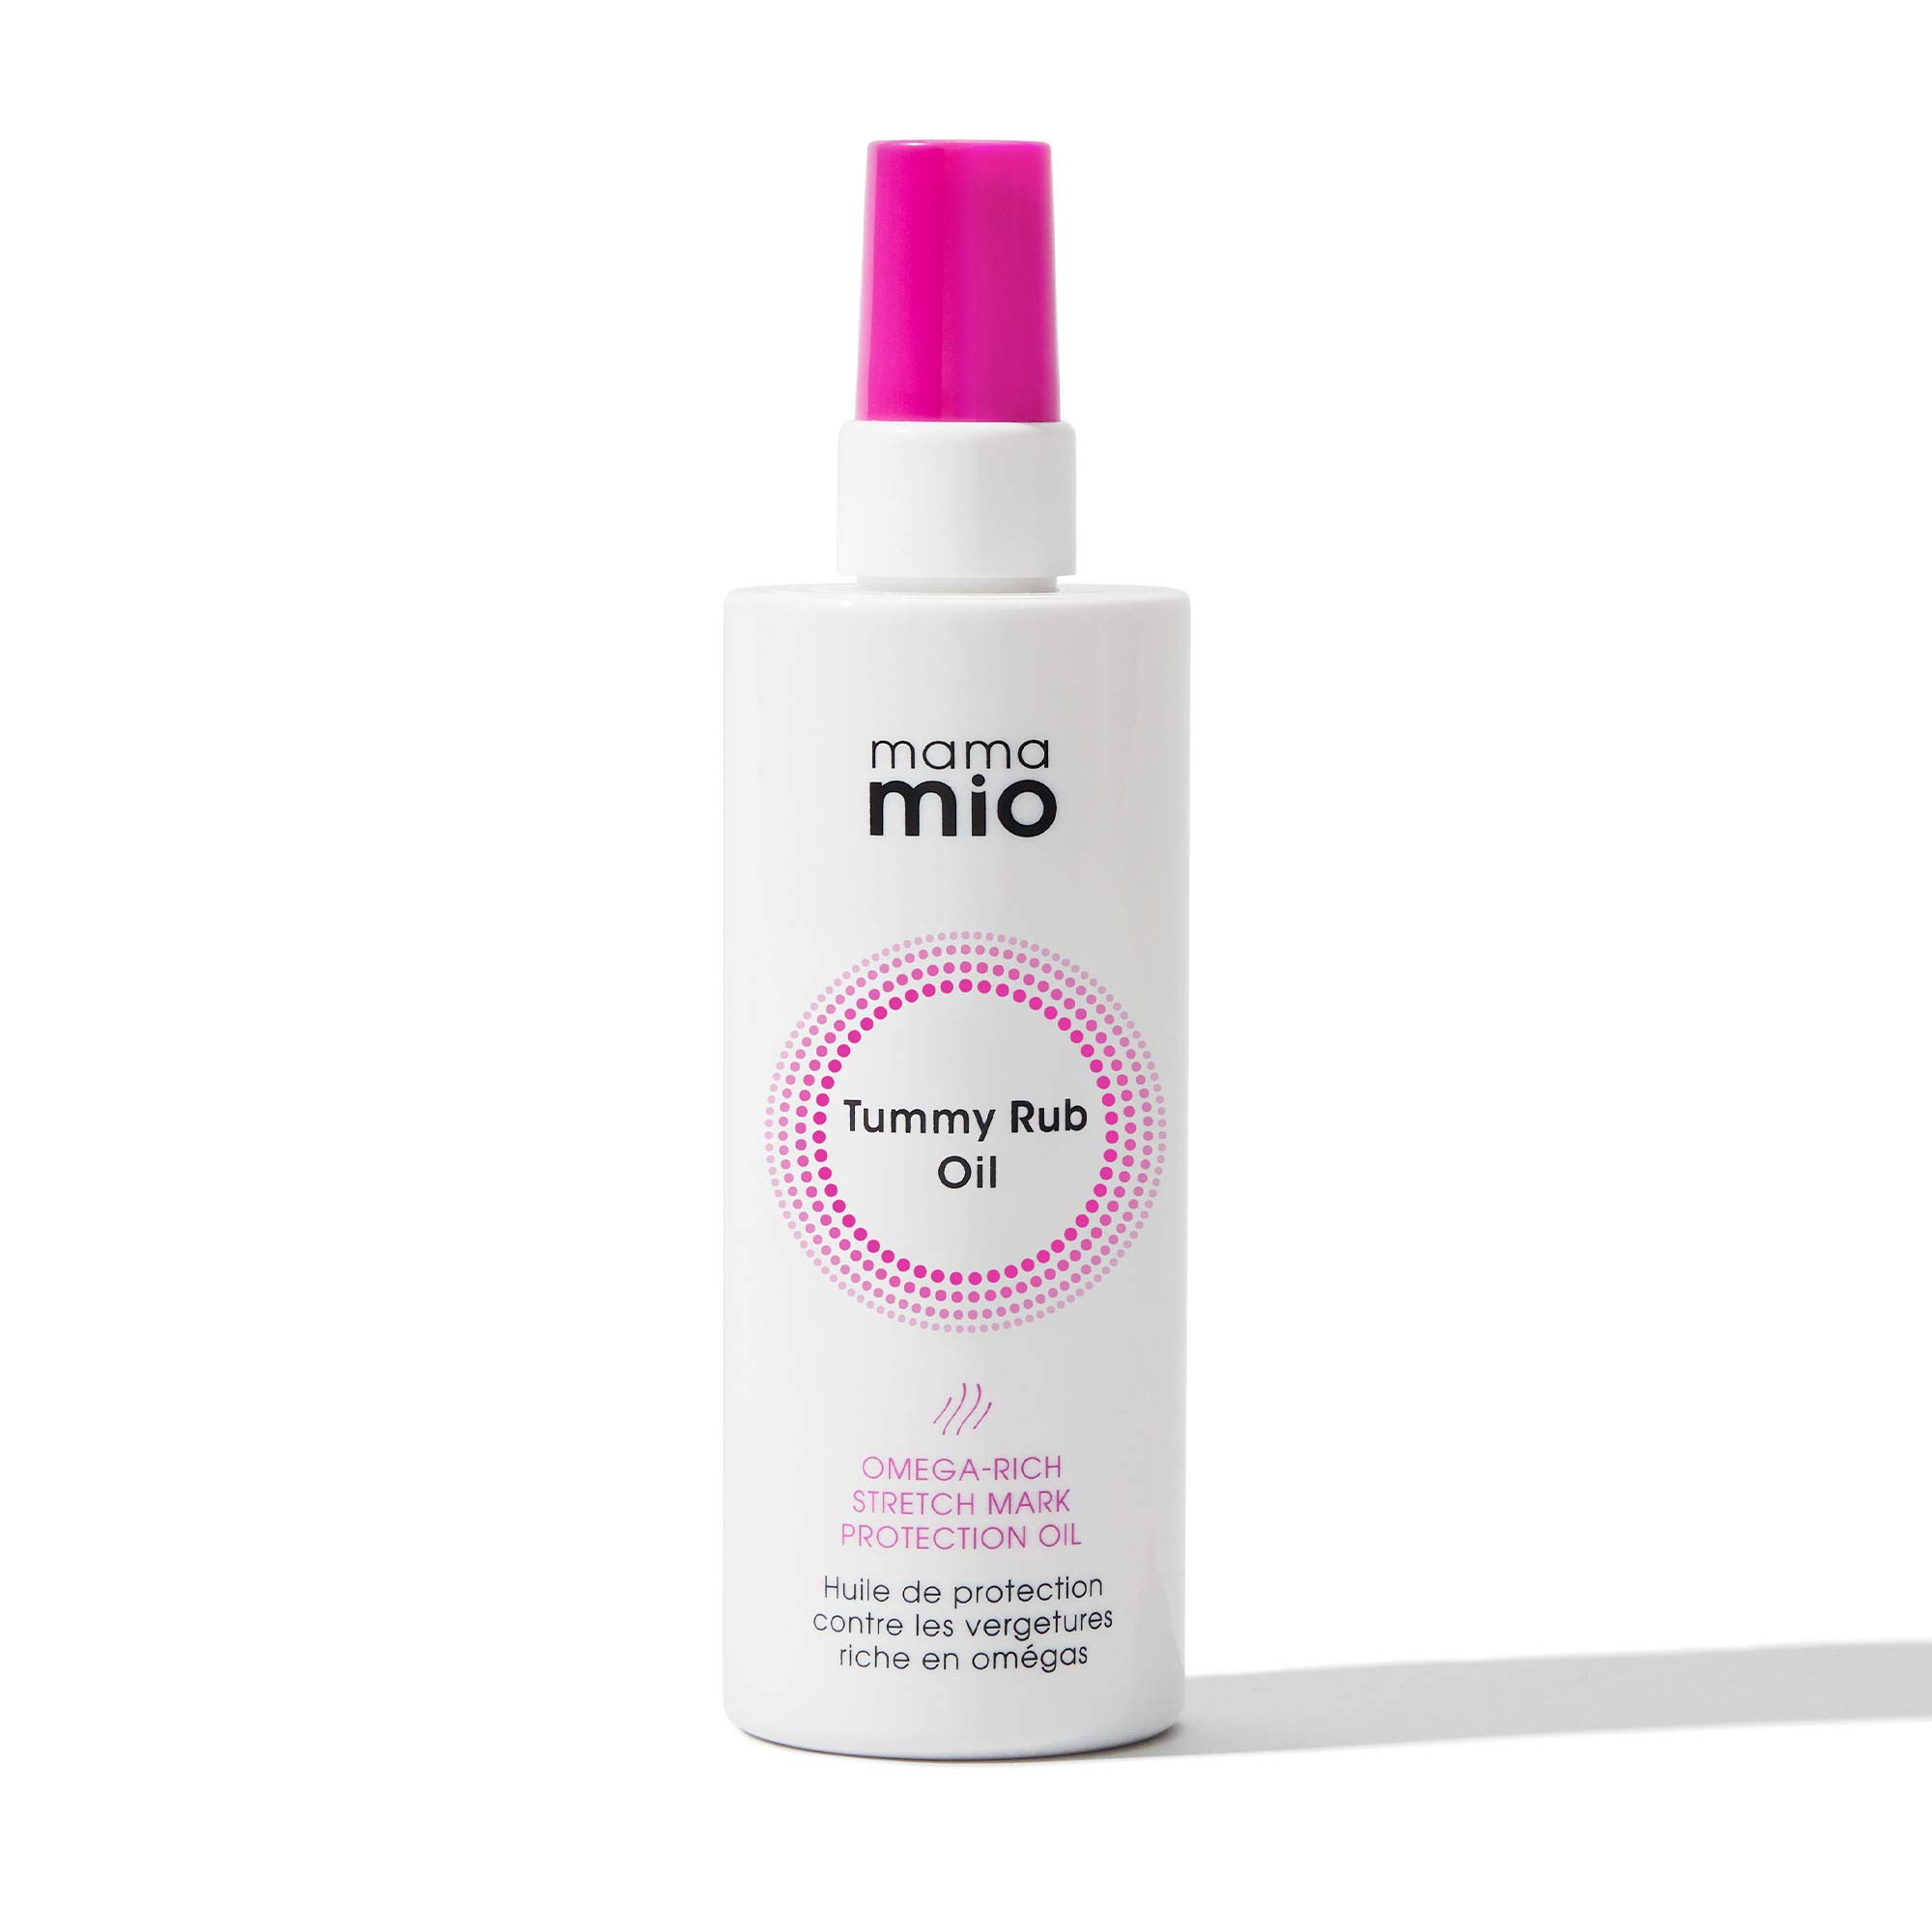 Mama Mio Tummy Rub Oil 120 ml | Schwangerschafts-Dehnungsstreifen-Schutzöl 120 ml | 99 Prozent natürlichen Ursprungs | Formuliert für trockene Unebenheiten